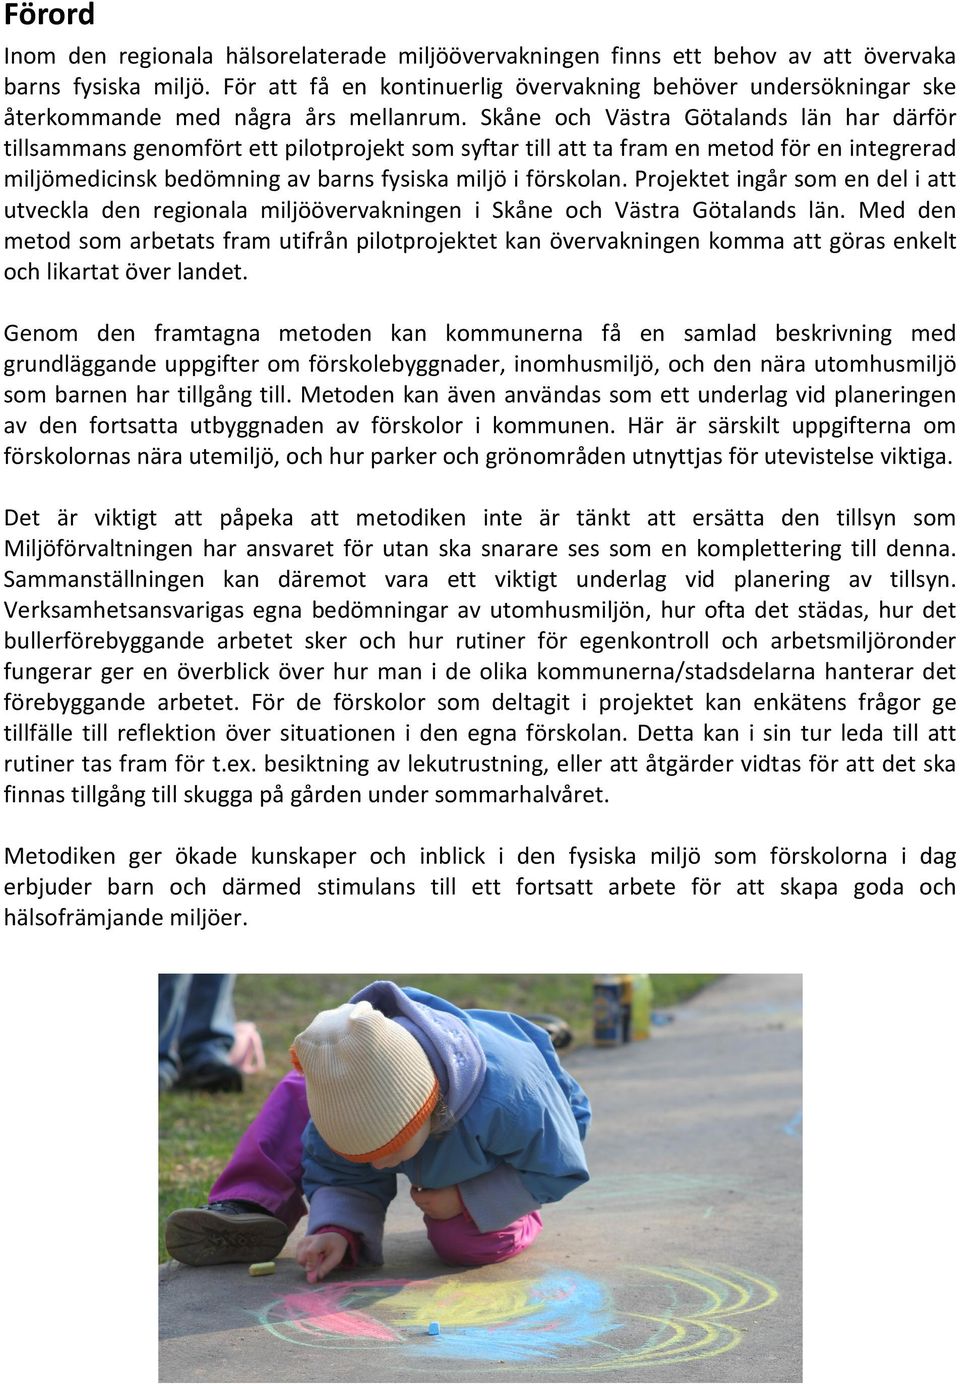 Skåne och Västra Götalands län har därför tillsammans genomfört ett pilotprojekt som syftar till att ta fram en metod för en integrerad miljömedicinsk bedömning av barns fysiska miljö i förskolan.